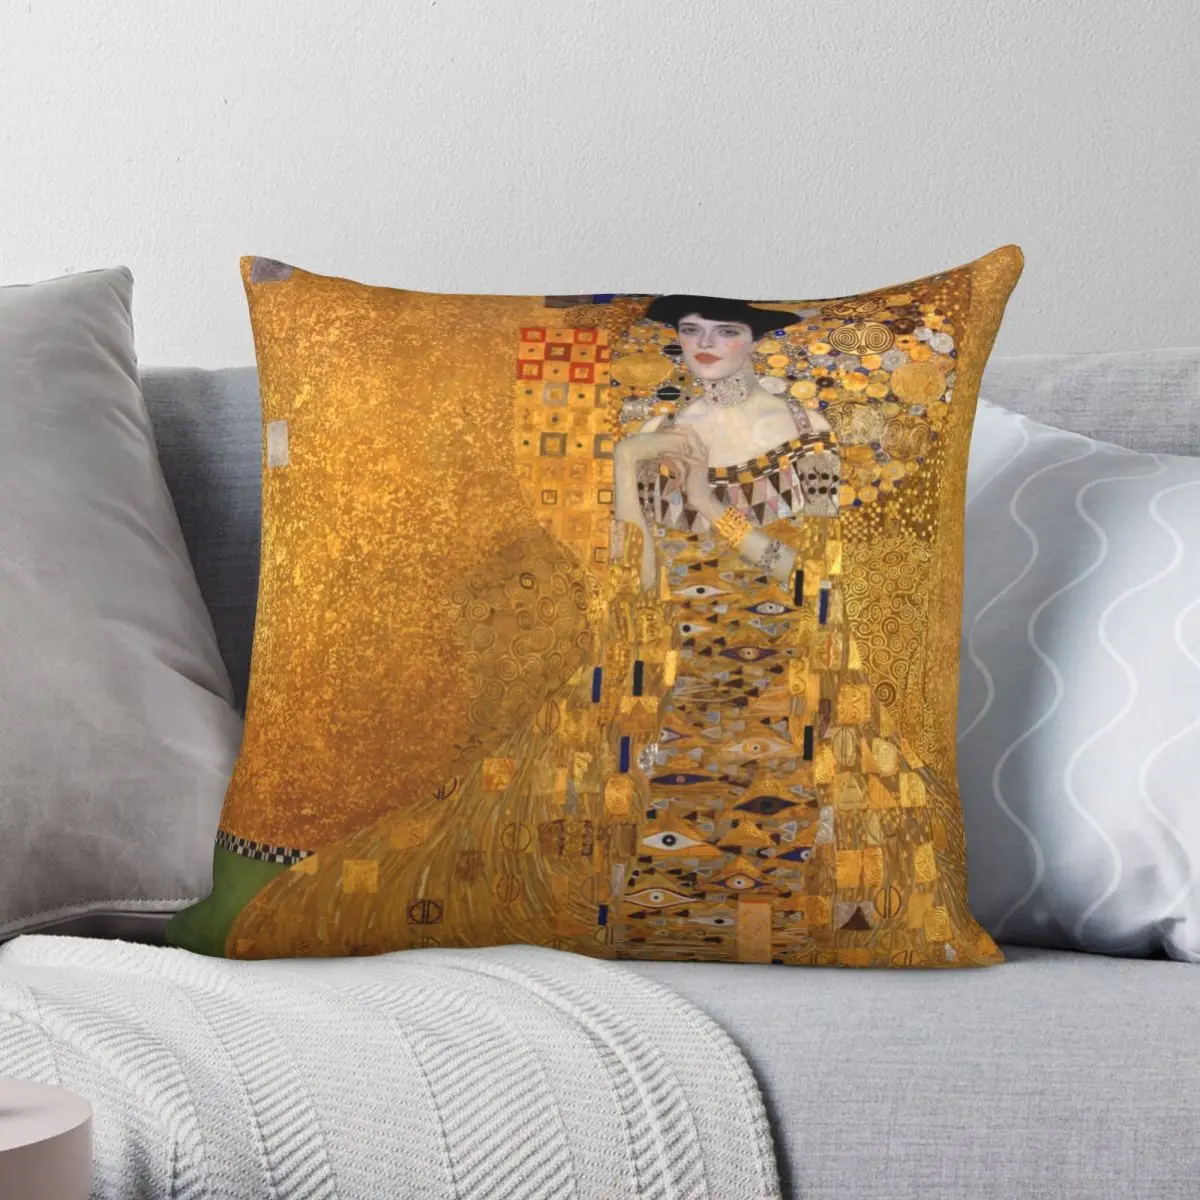 

Adele Bloch-Bauer I By Gustav Klimt Pillowcase Polyester Linen Velvet Creative Zip Decor Pillow Case Sofa Cushion Cover 18"